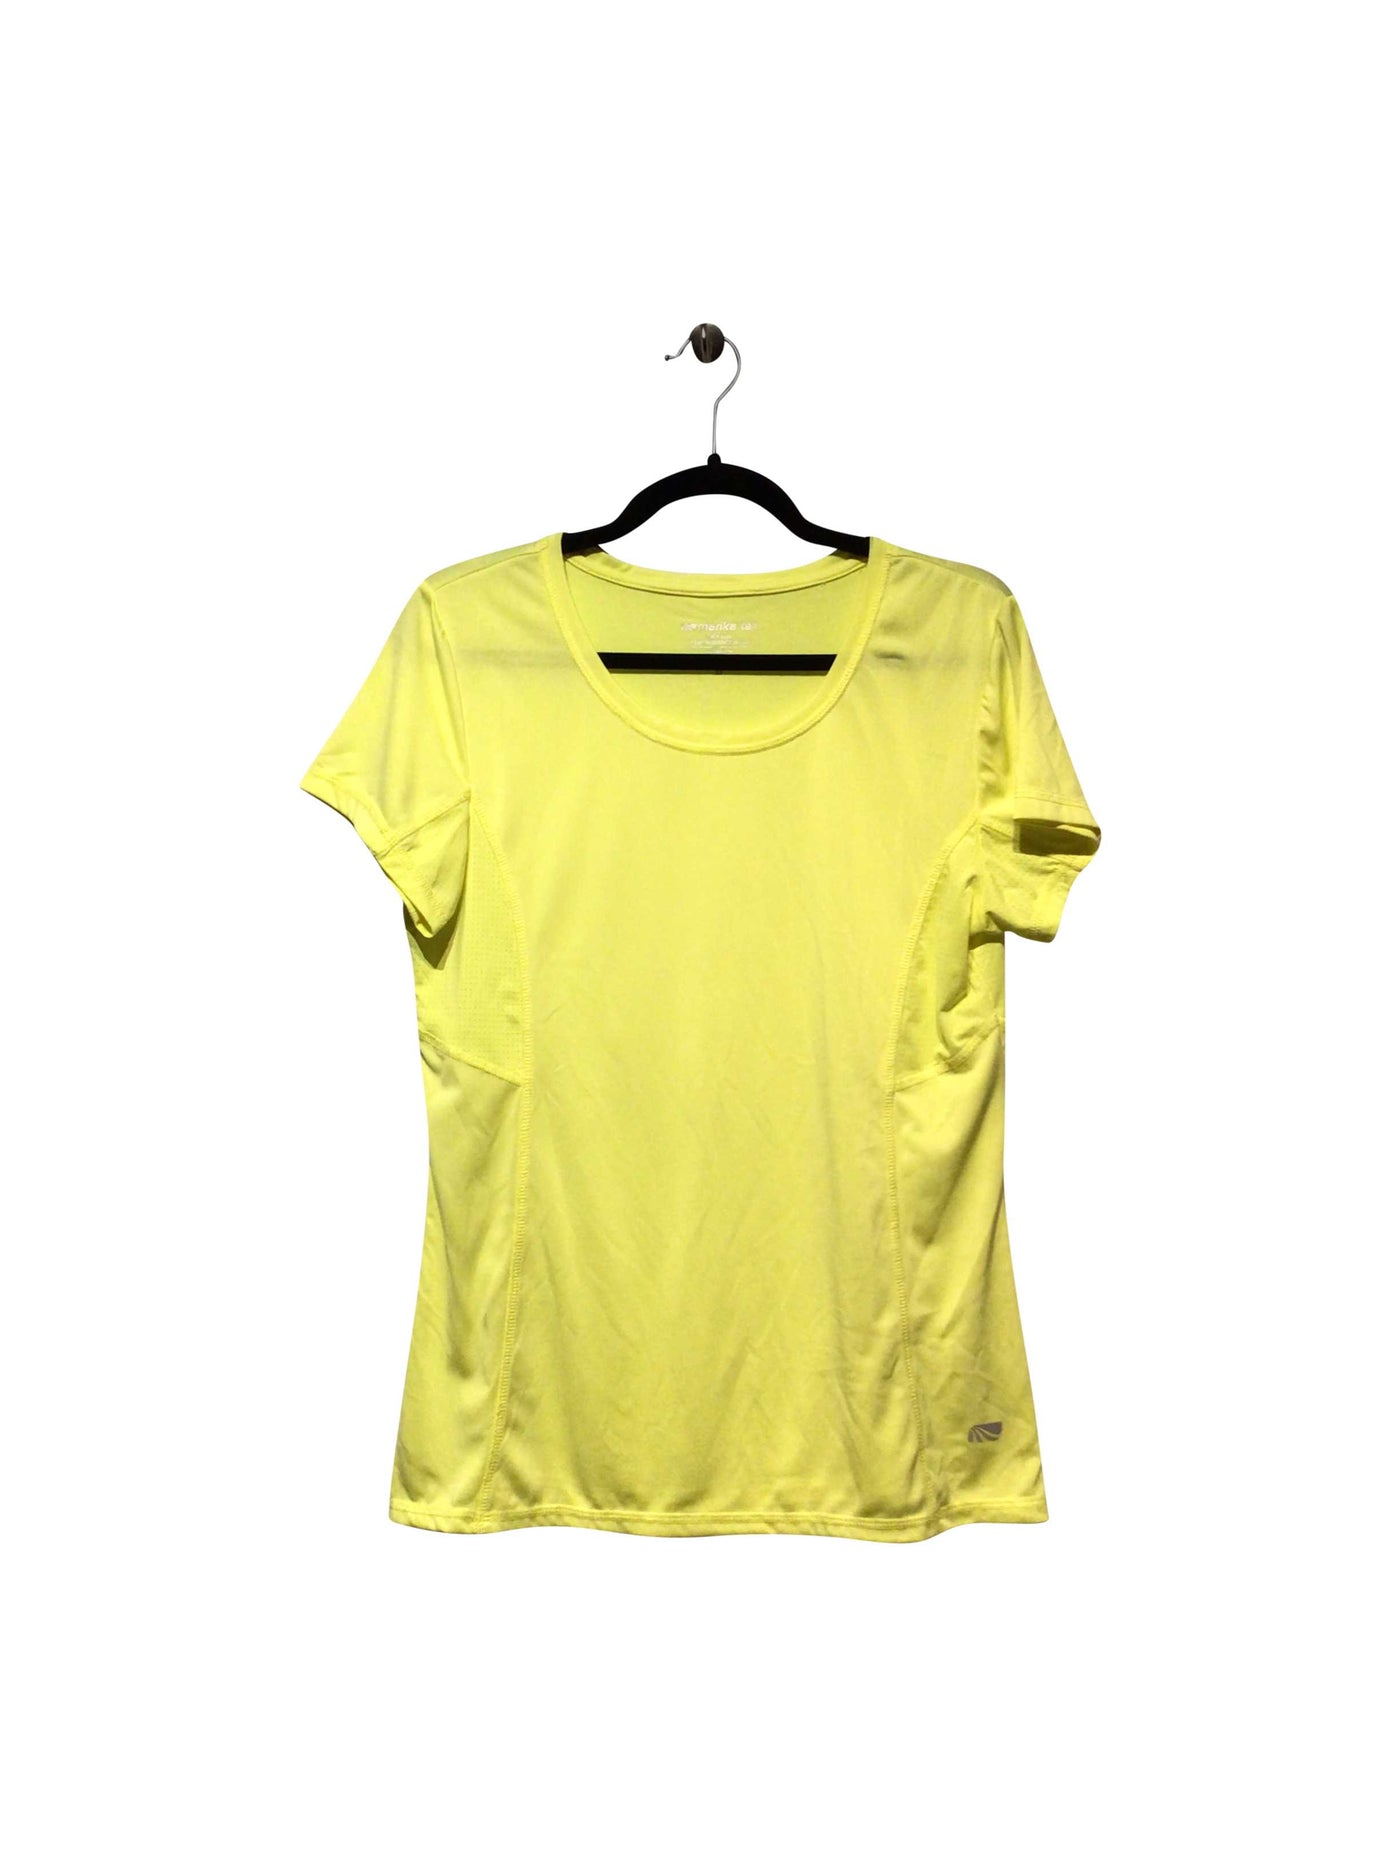 MARIKA TEK Regular fit Activewear Top in Yellow  -  2XL  8.99 Koop